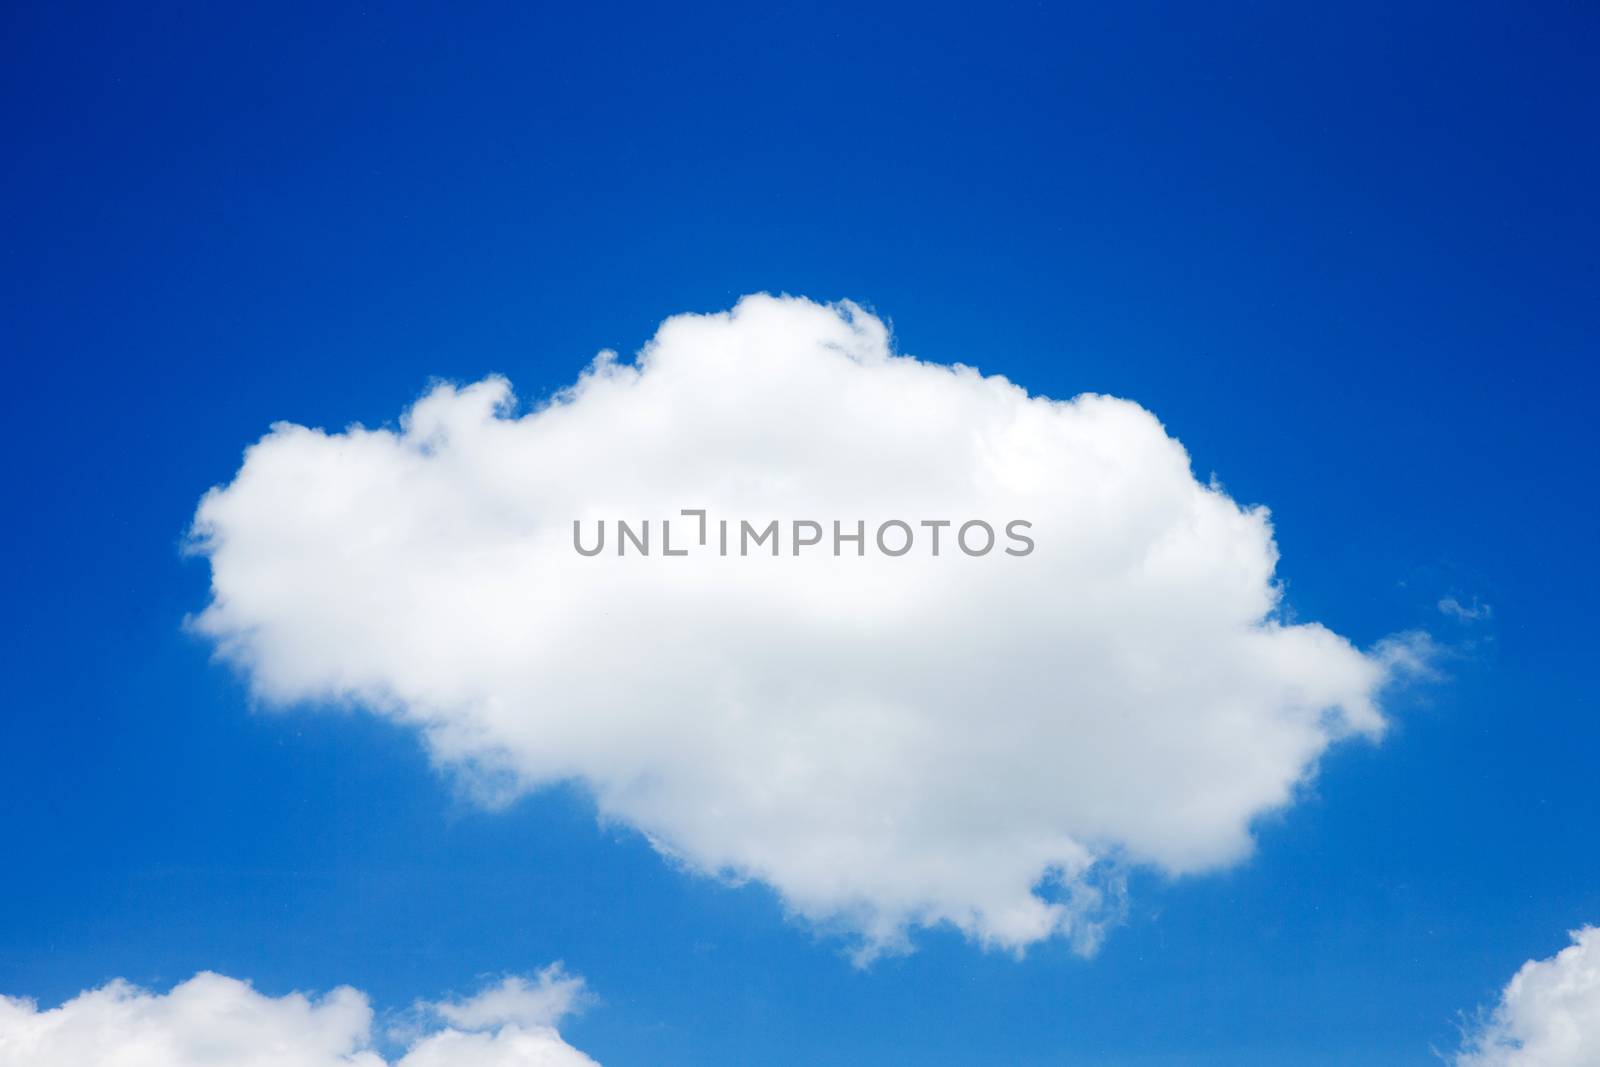  clouds by Pakhnyushchyy